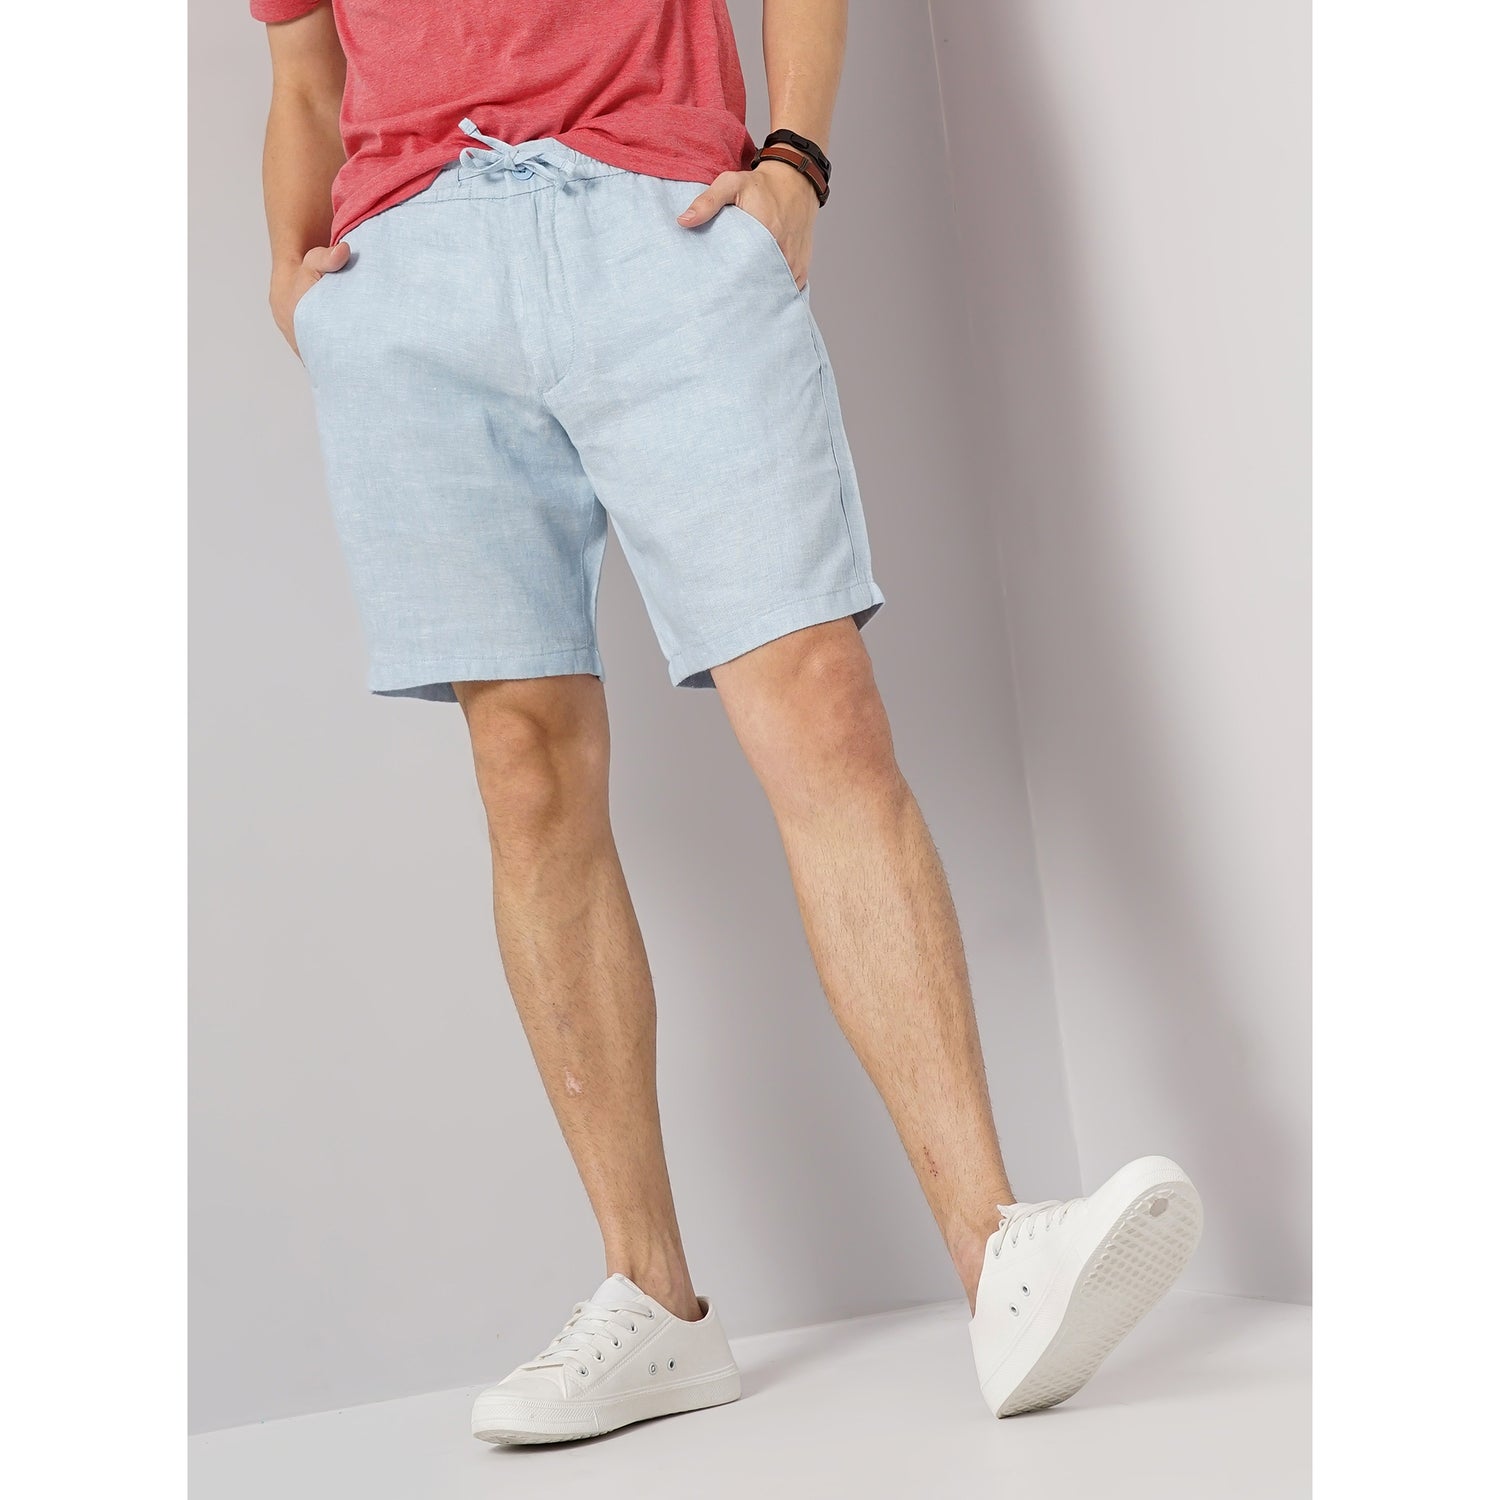 Men Blue Solid Loose Fit Linen Casual Shorts (DOLINUSBM1)